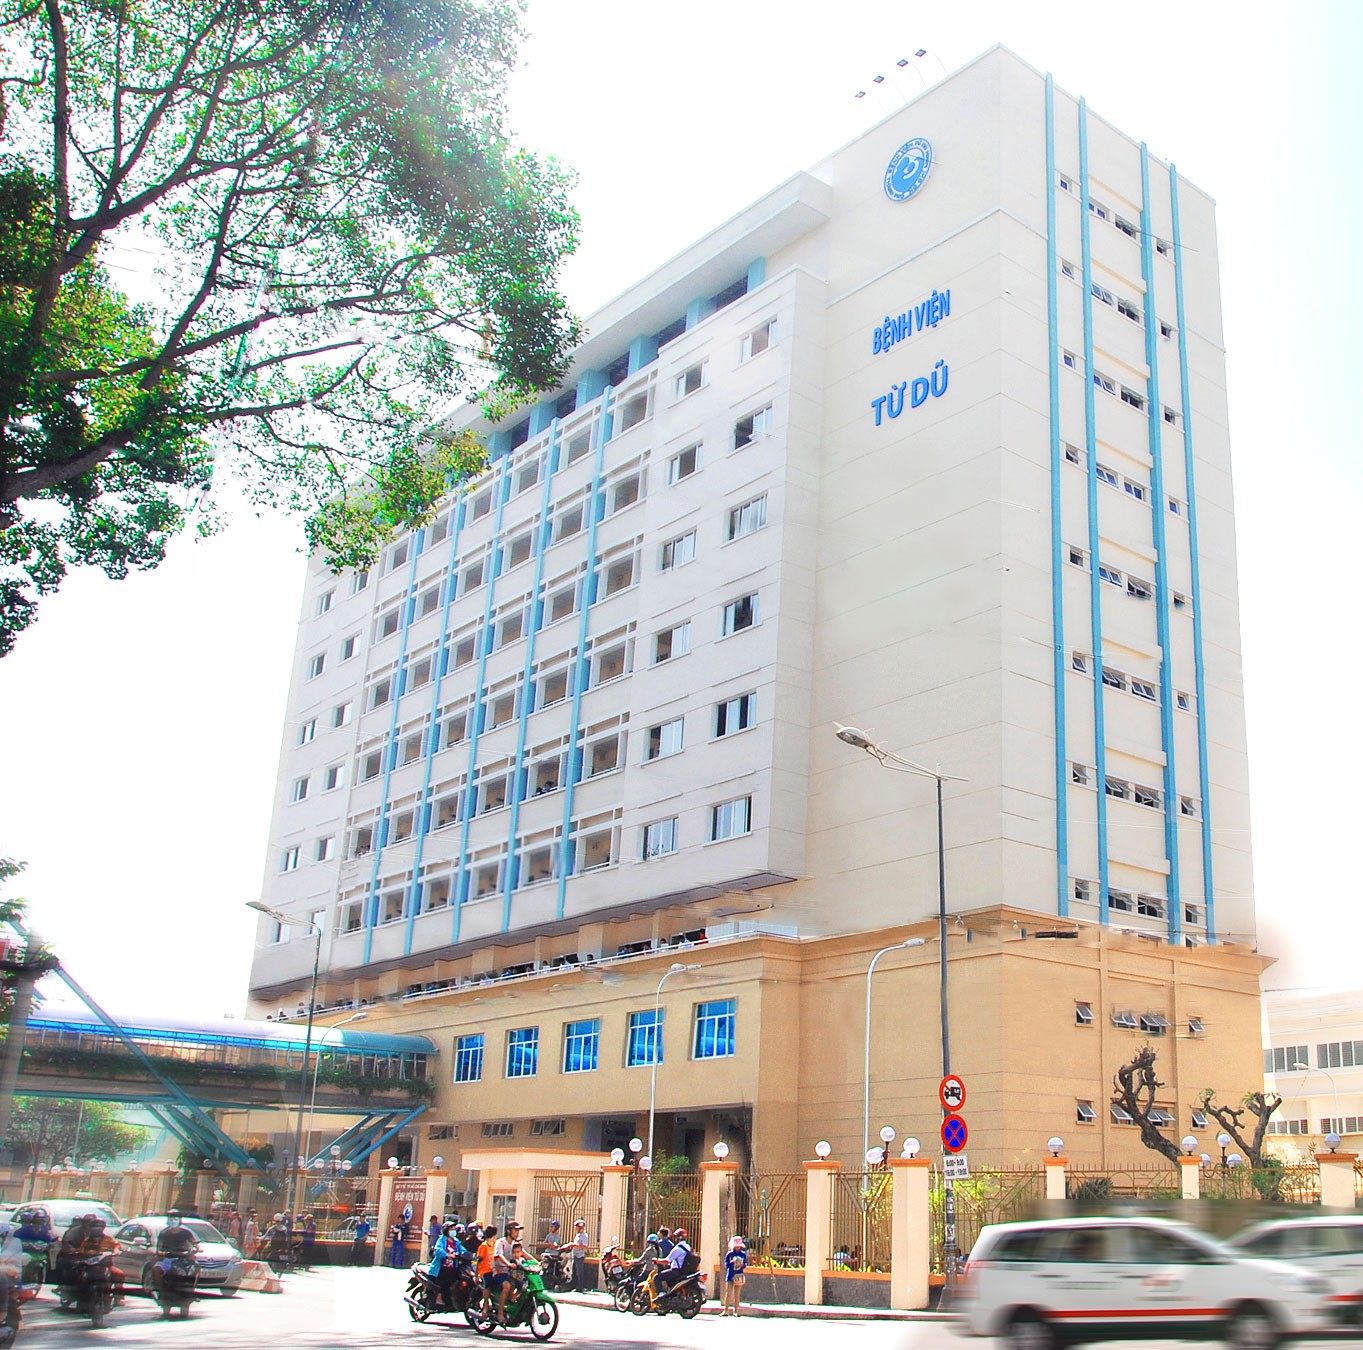 Bệnh viện phụ sản Từ Dũ - thành phố Hồ Chí Minh là một trong những cơ sở xét nghiệm tinh dịch đồ uy tín